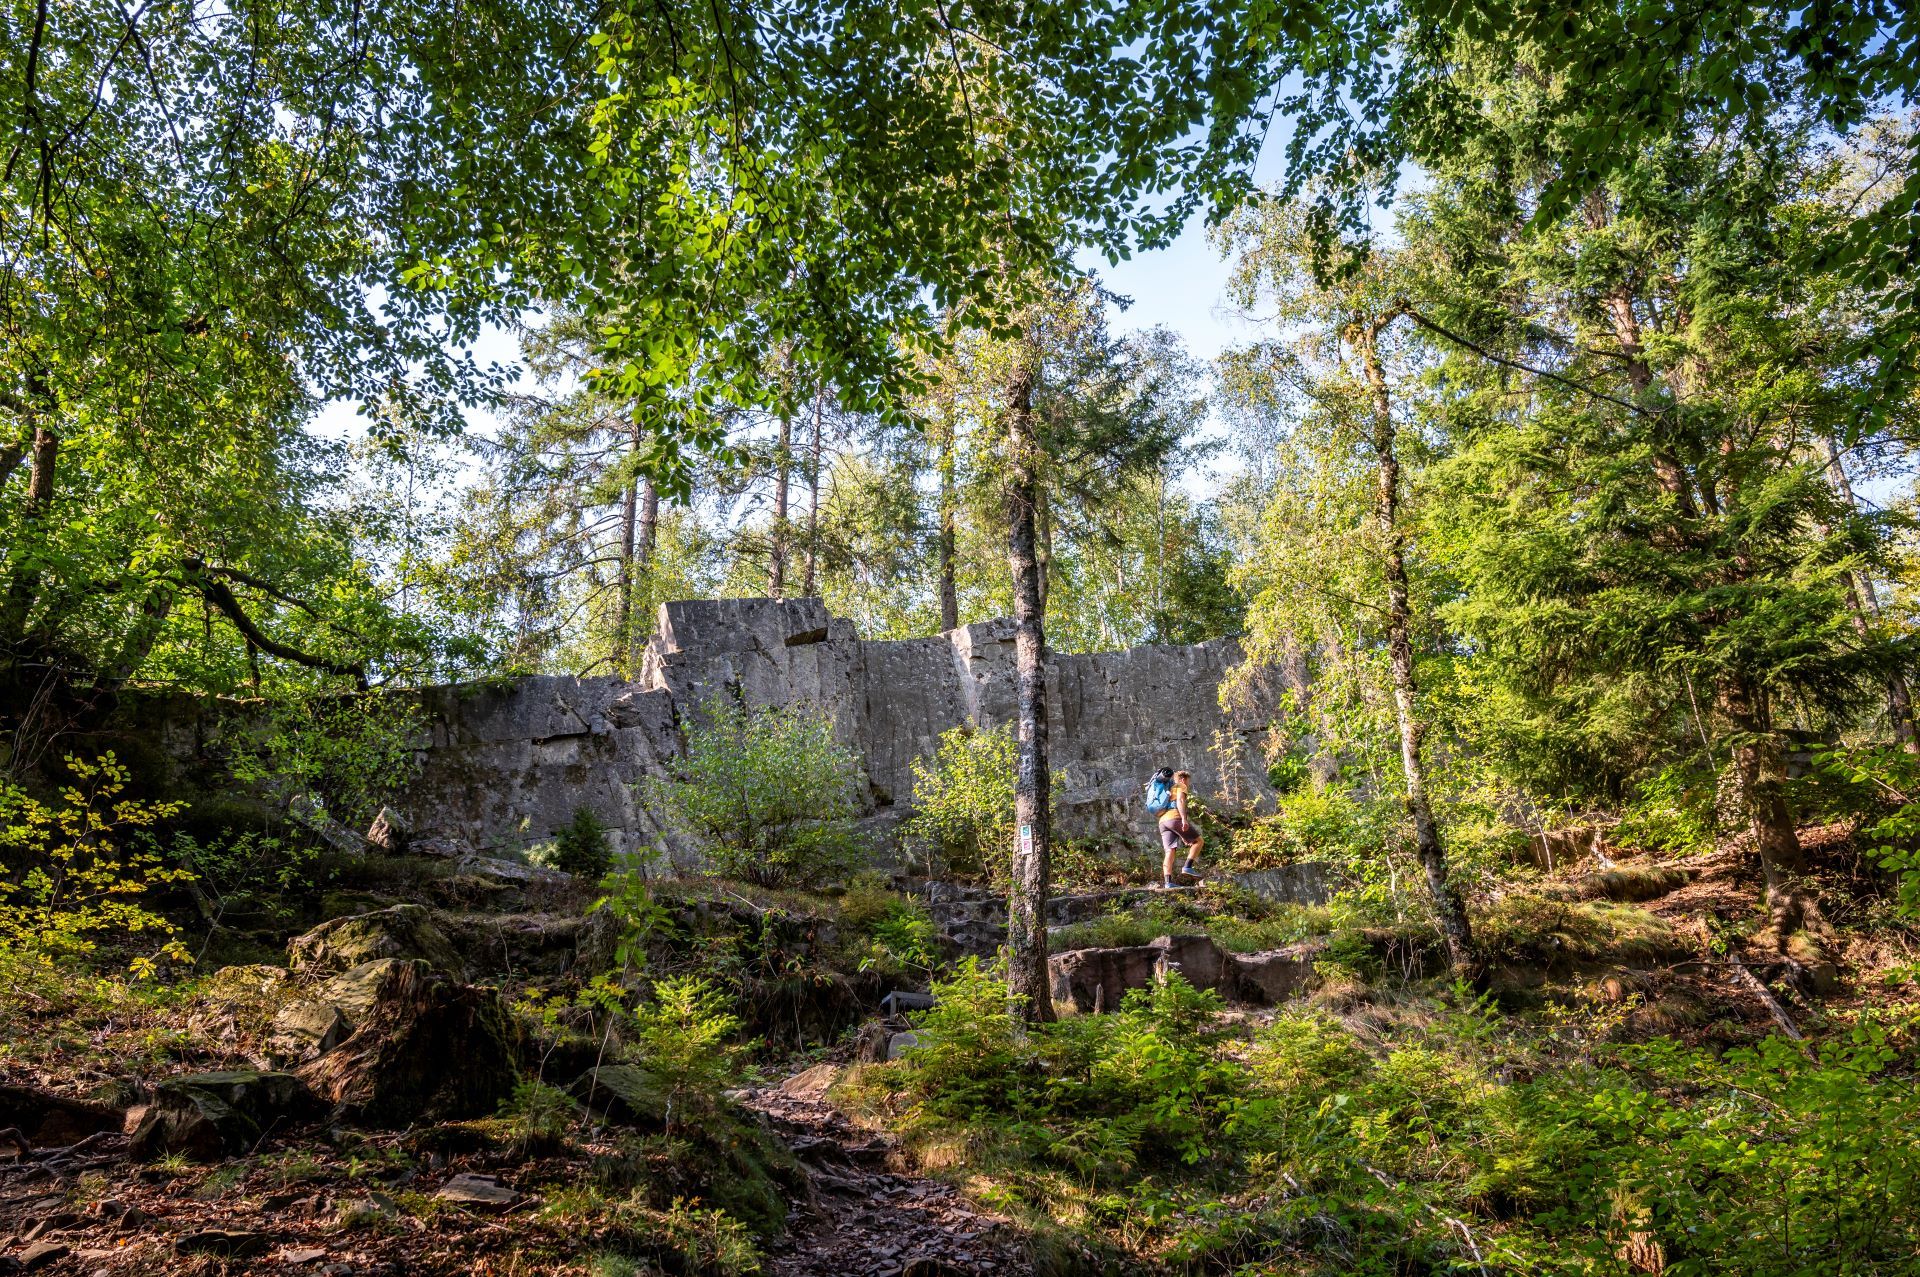 Mitten im Wald sind antike Ruinen abgebildet, vor denen ein Mann mit gelbem Hemd und blauem Rucksack wandert.